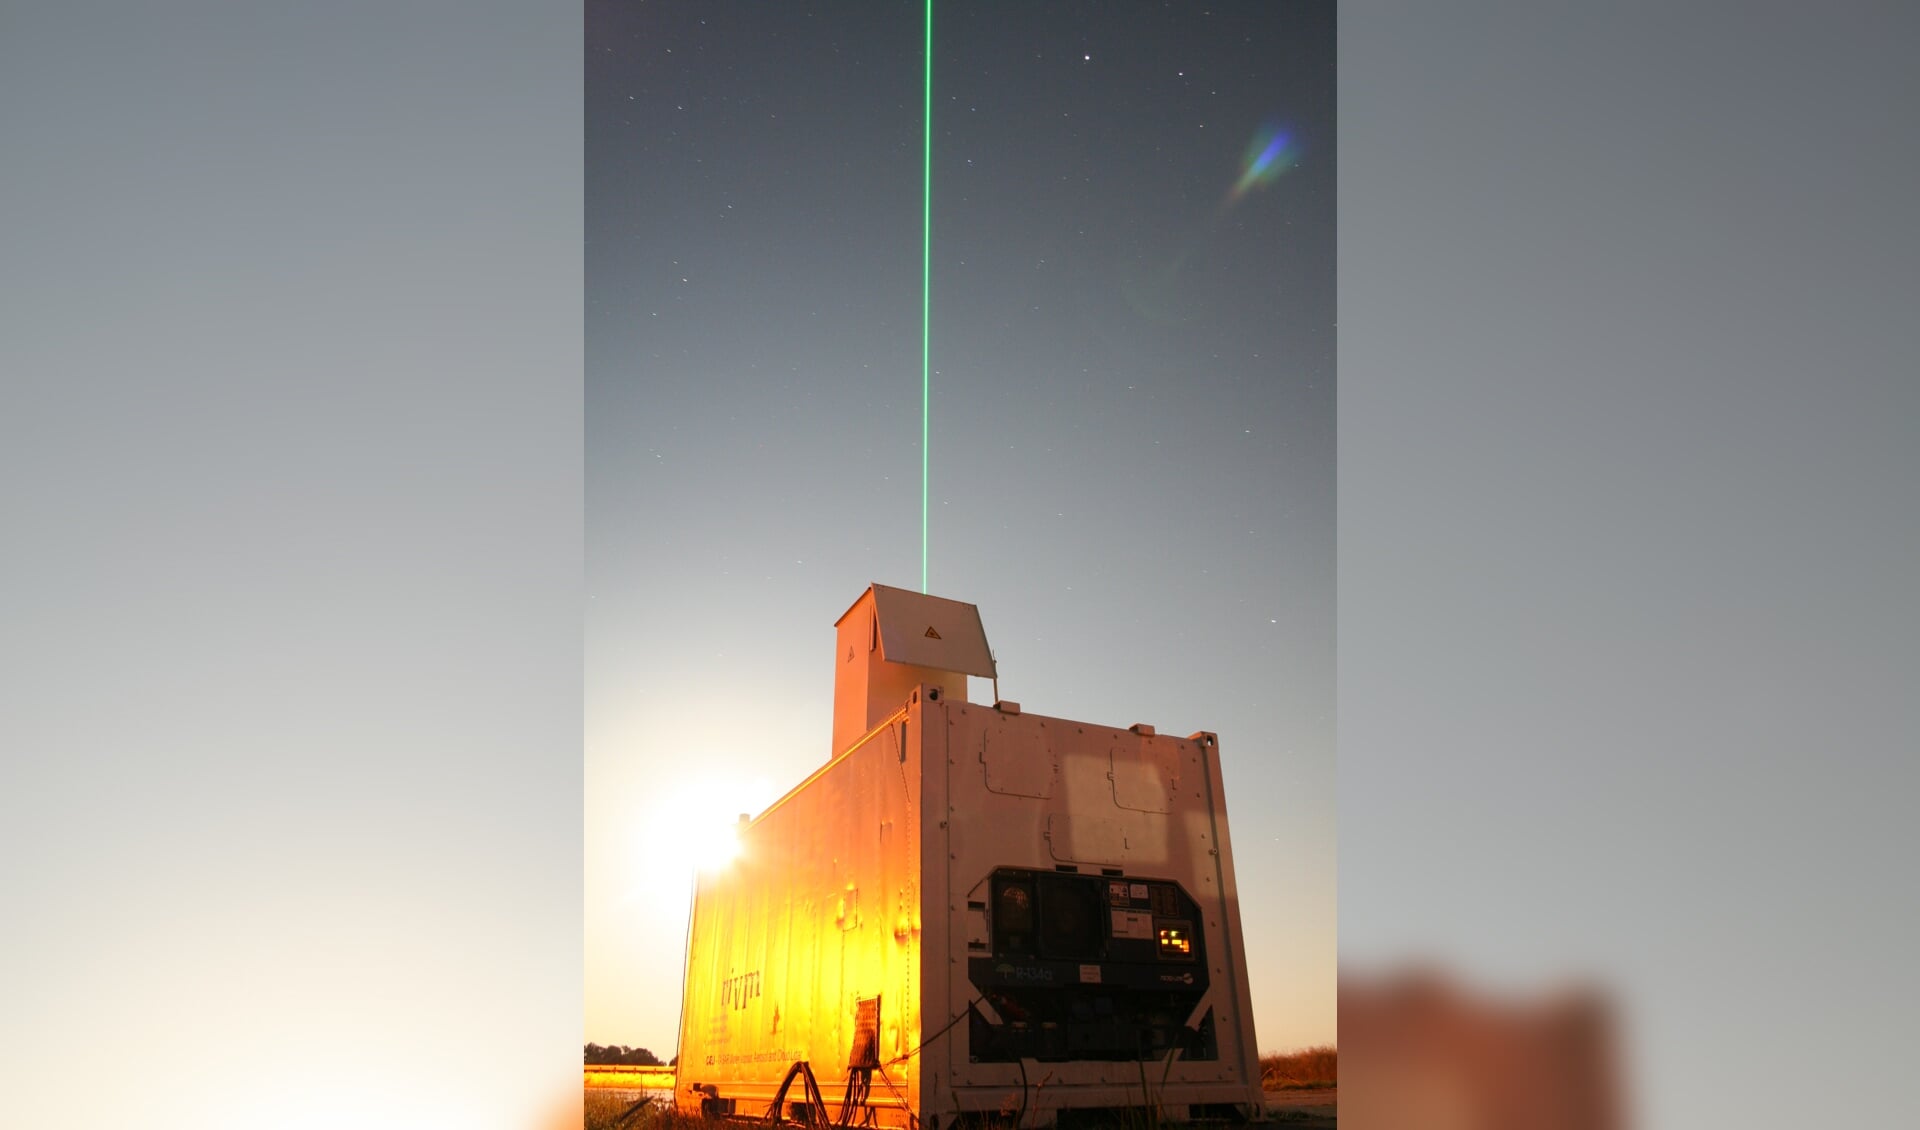 De radar met laserlicht, die bij het onderzoek wordt gebruikt. 